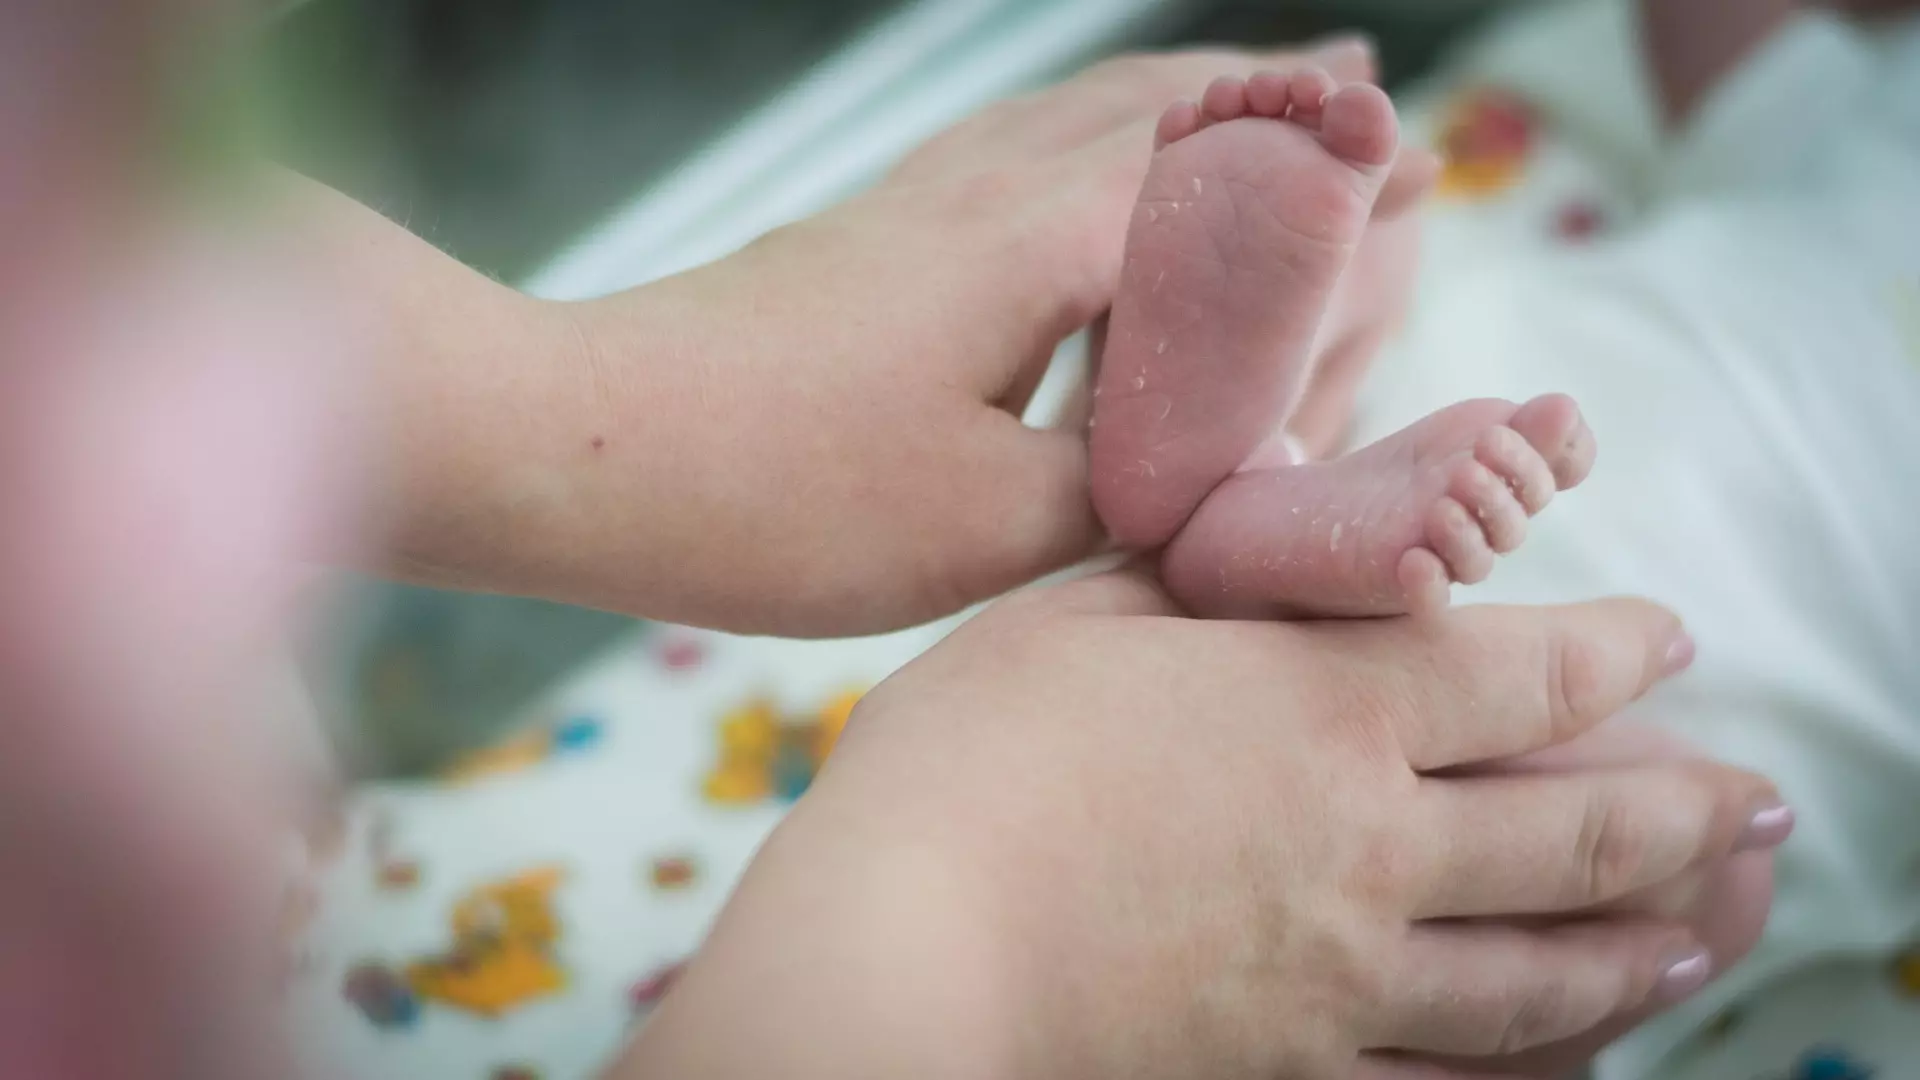 Жительница Нижегородской области родила девочку весом в 310 граммов